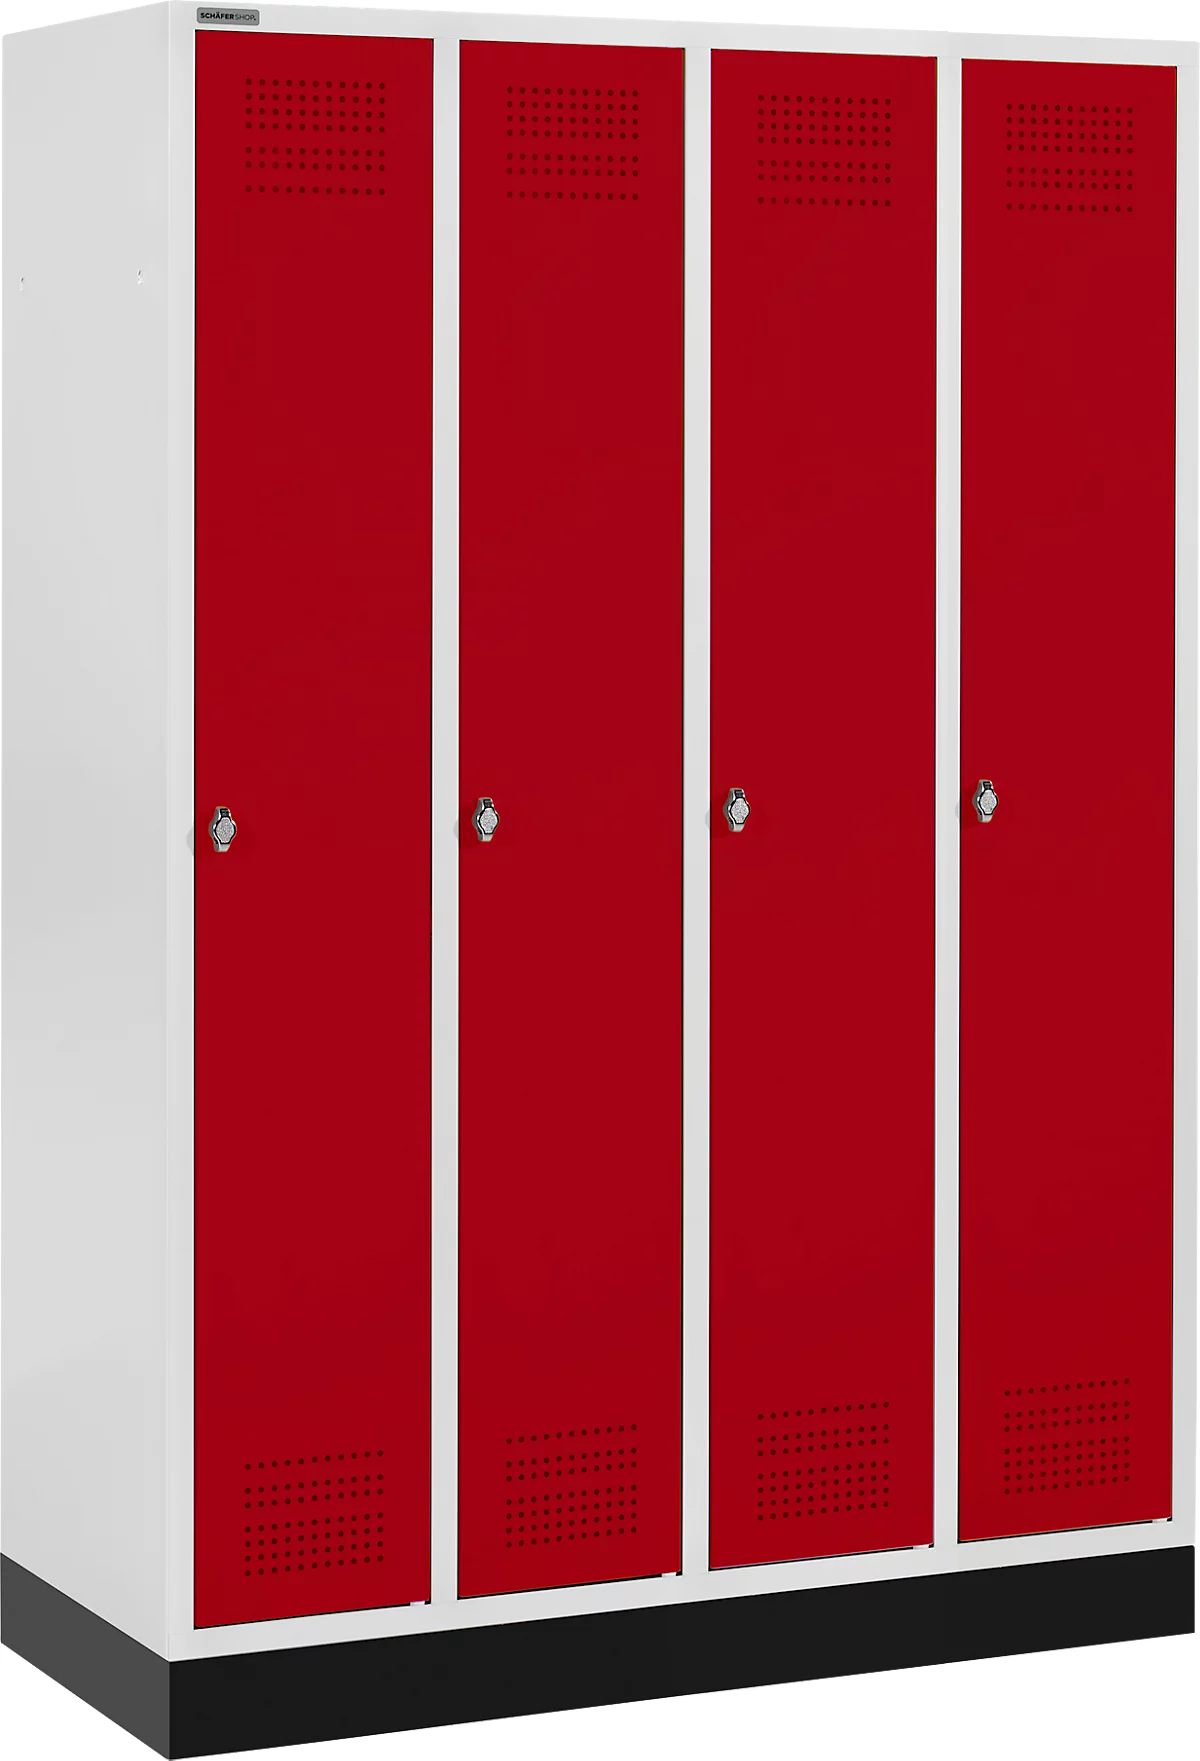 Schäfer Shop Genius Taquilla con zócalo, 4 compartimentos, cierre de pasador giratorio, gris luminoso/rojo